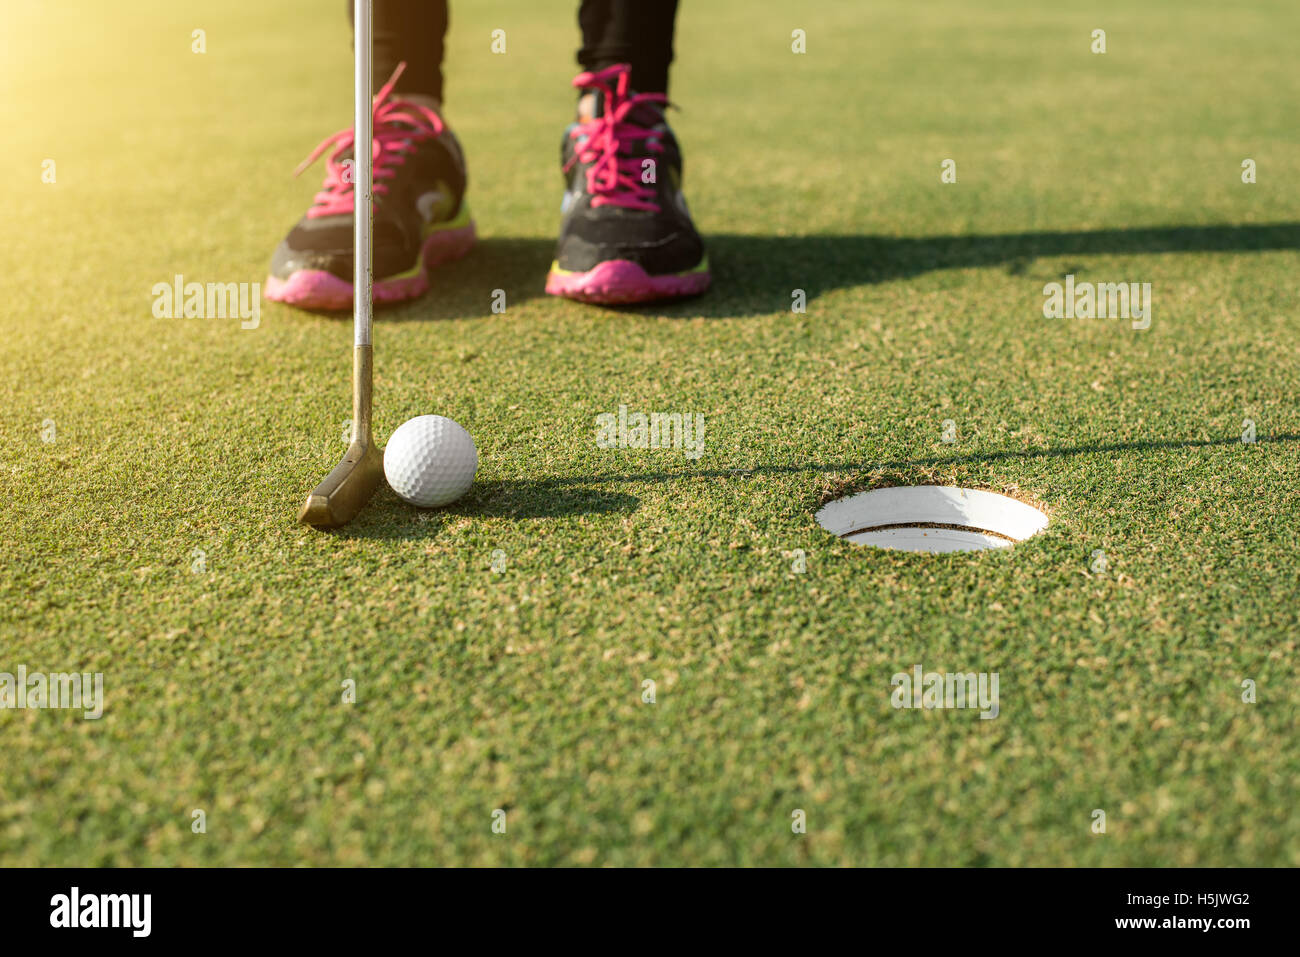 Giocatore di golf al putting green mettendo la pallina da golf in un foro. Golf sport concept. Foto Stock